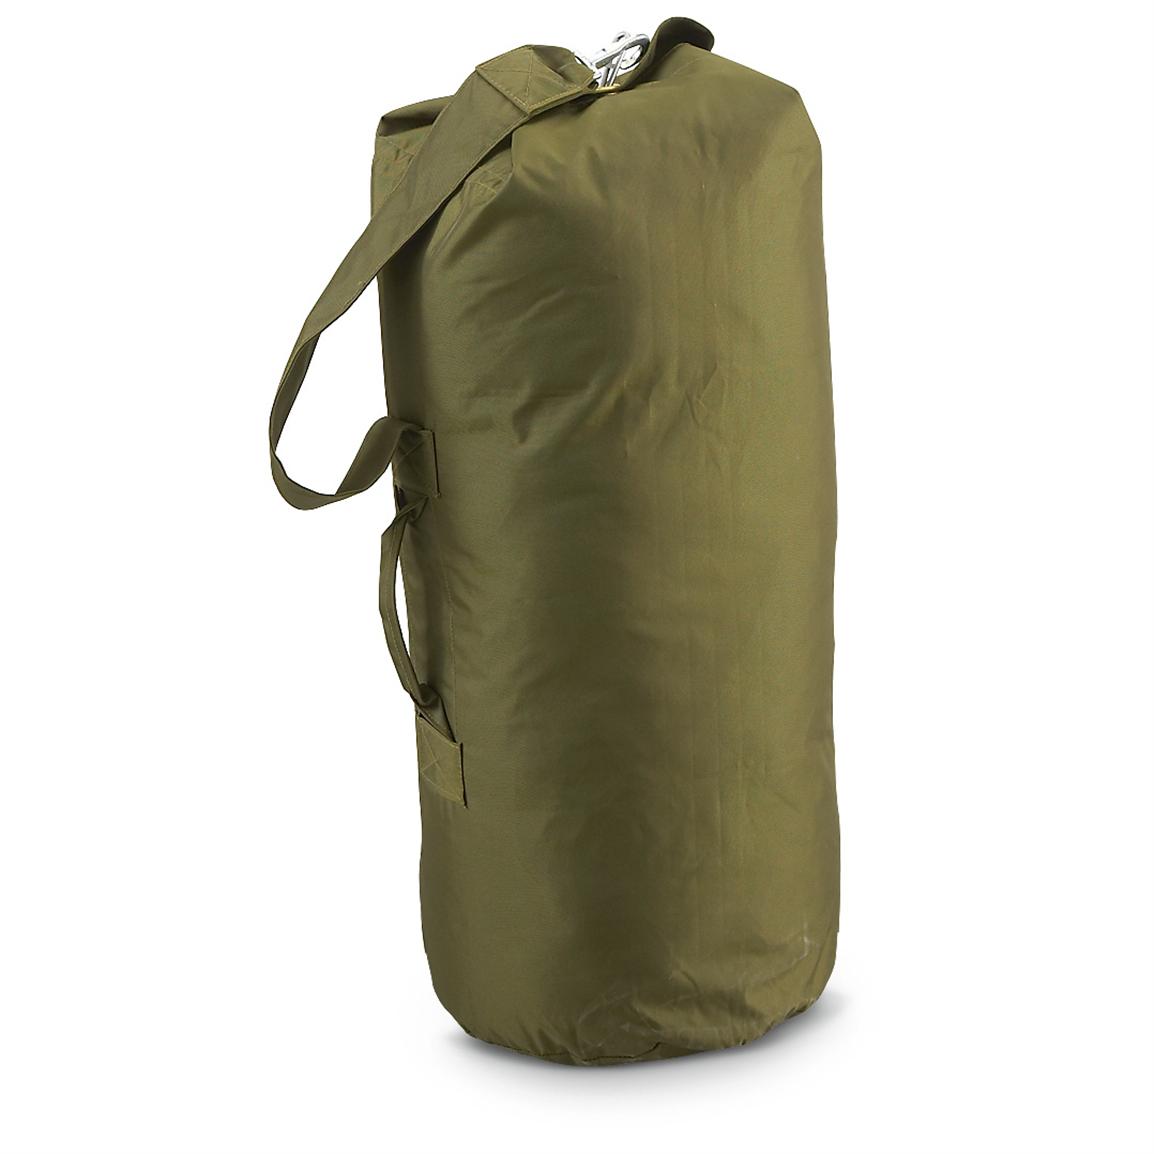 New Norwegian Military Duffel Bag, Olive Drab - 205935, Military & Camo Duffle Bags at Sportsman ...